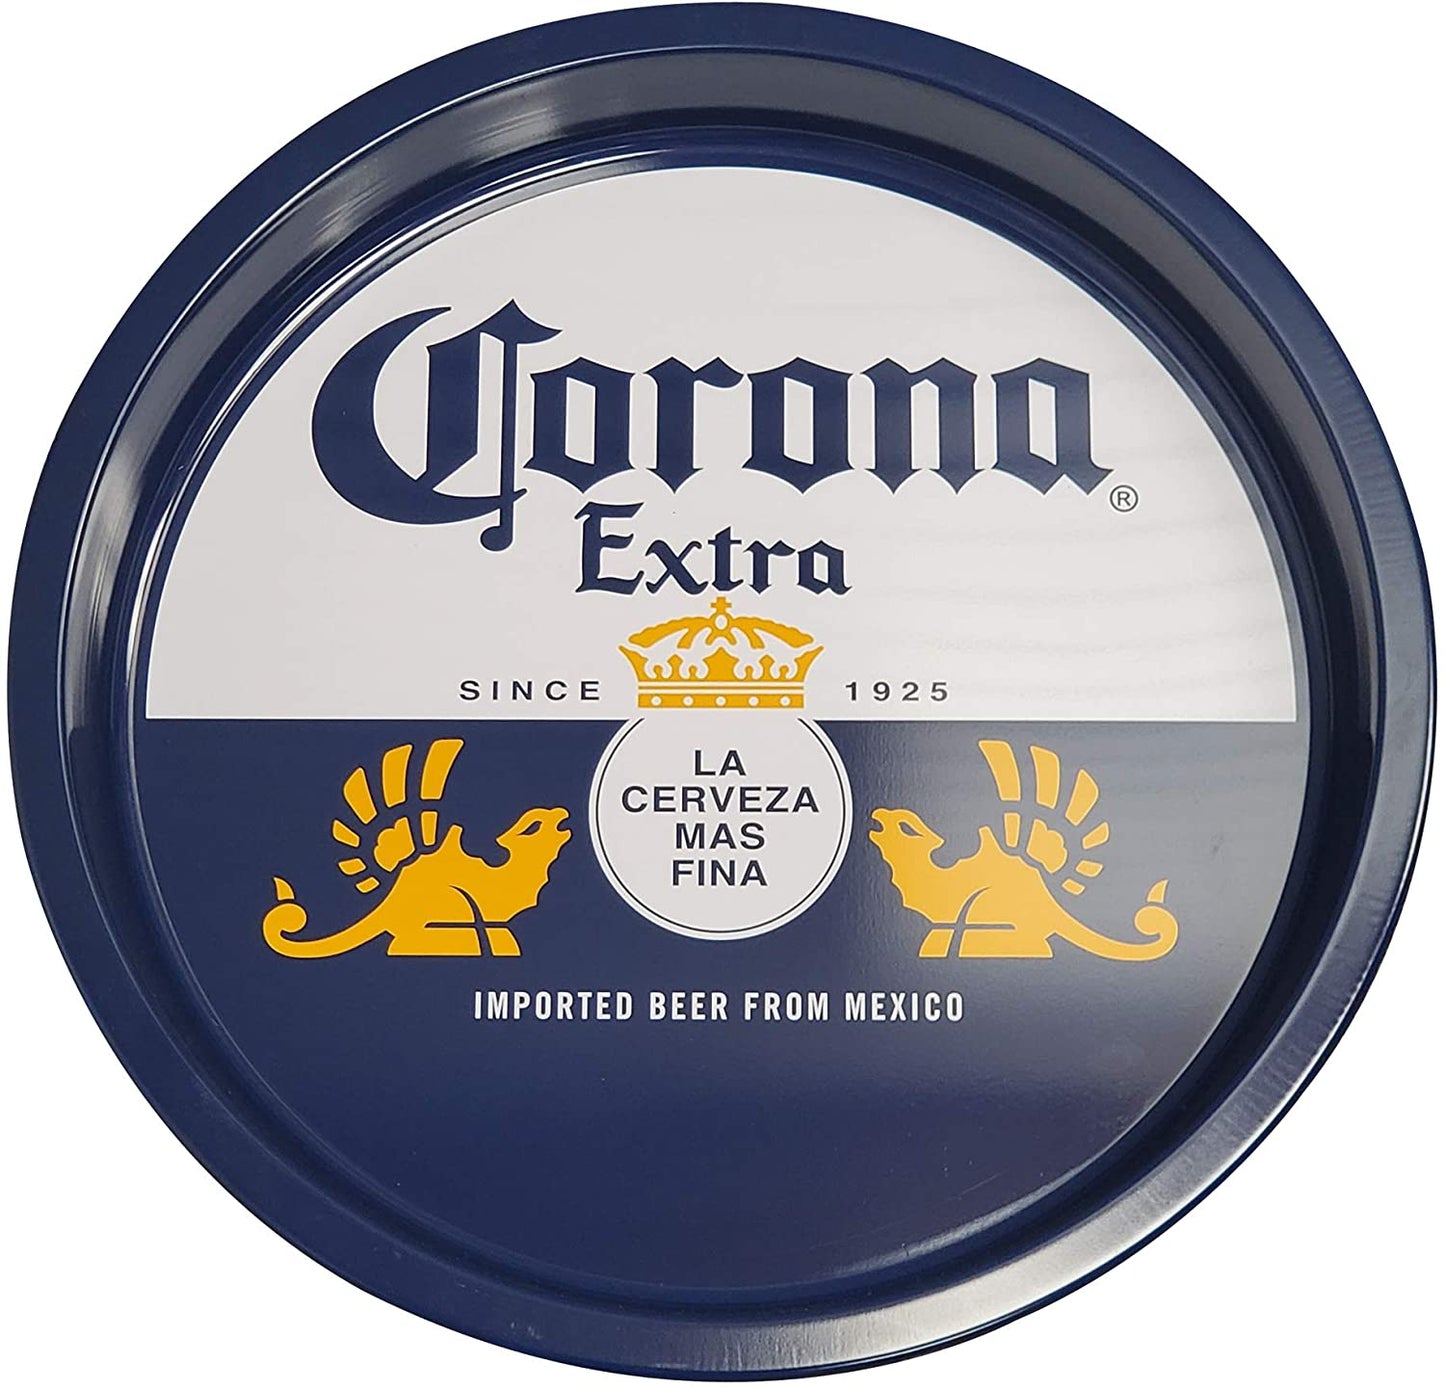 Corona Extra Serving Tray